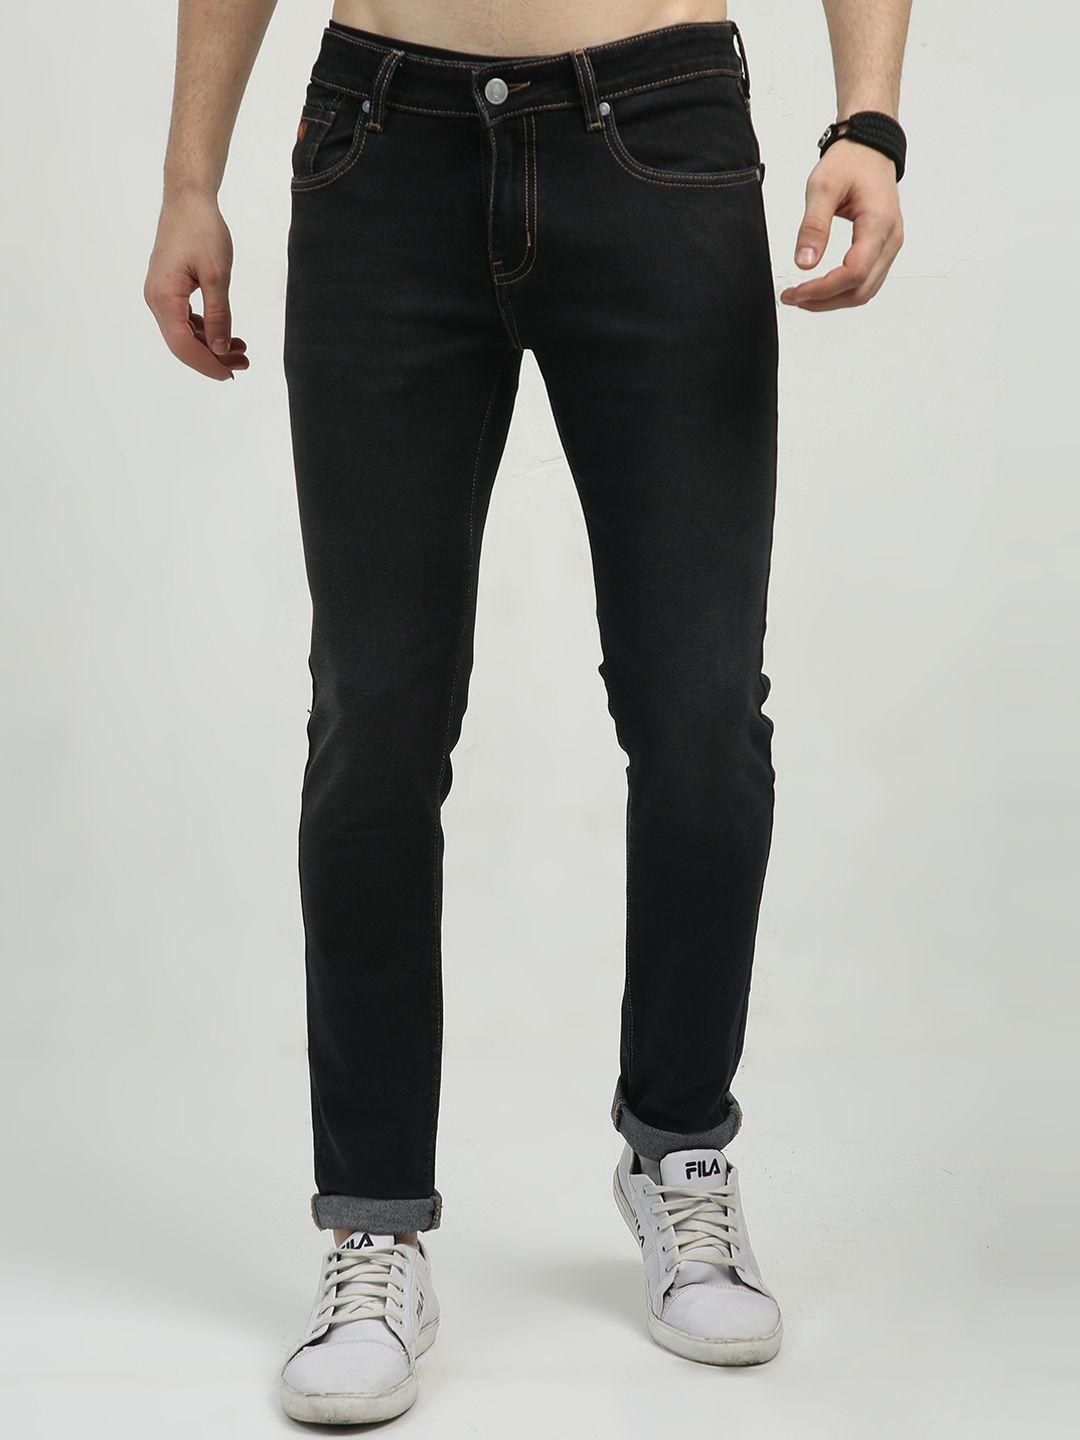 classic-polo-men-jean-slim-fit-cotton-denim-mid-rise-jeans